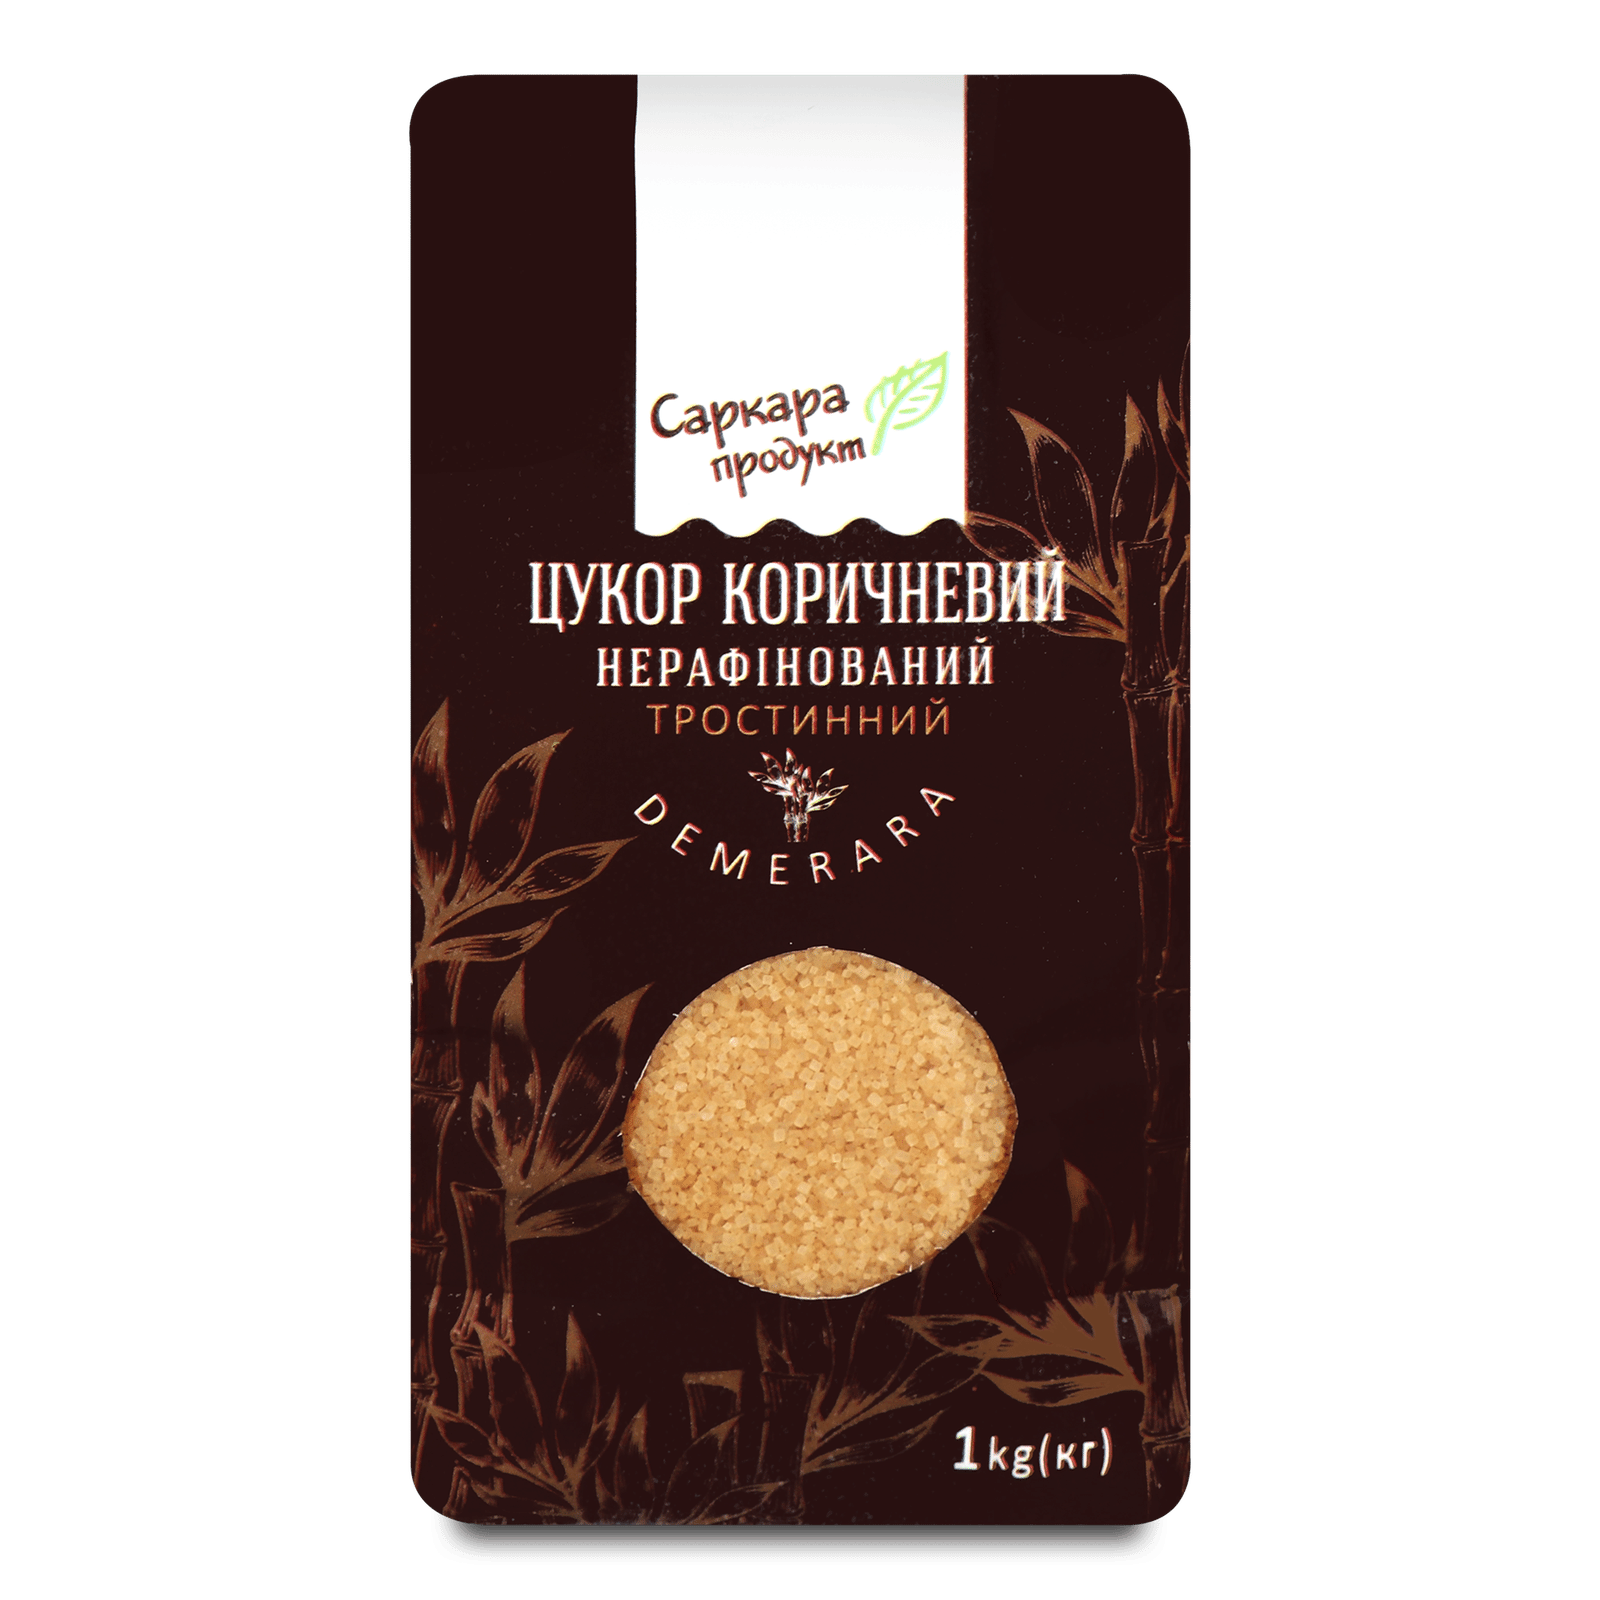 Цукор «Саркара» продукт тростинний Demerara нерафінований коричневий - 1